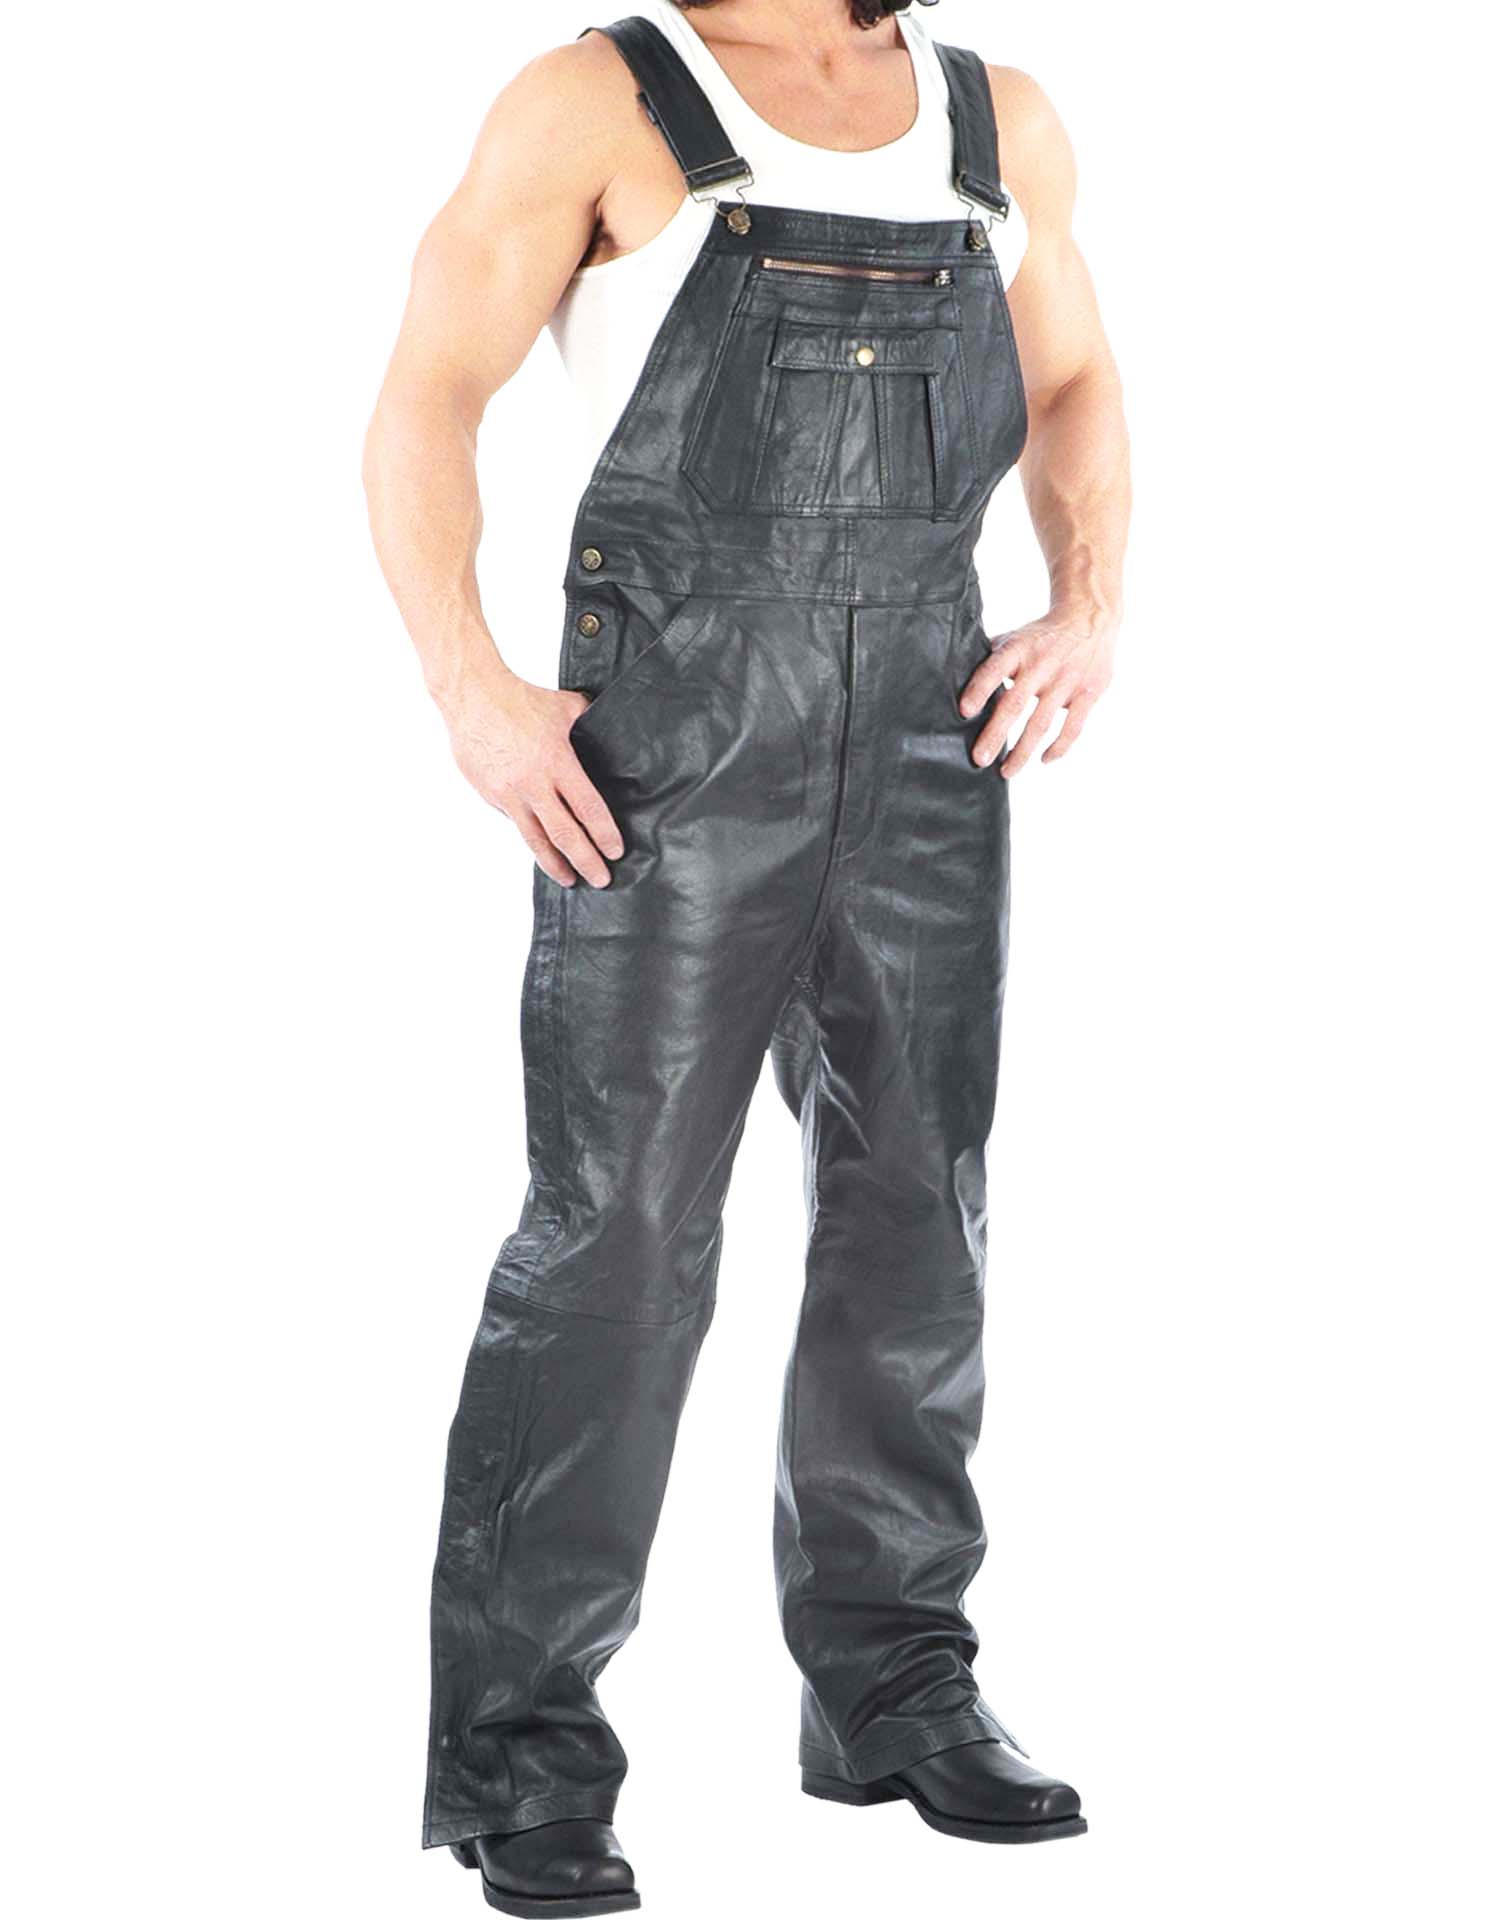 Men's Premium Black Leather Overalls (Size: Small)